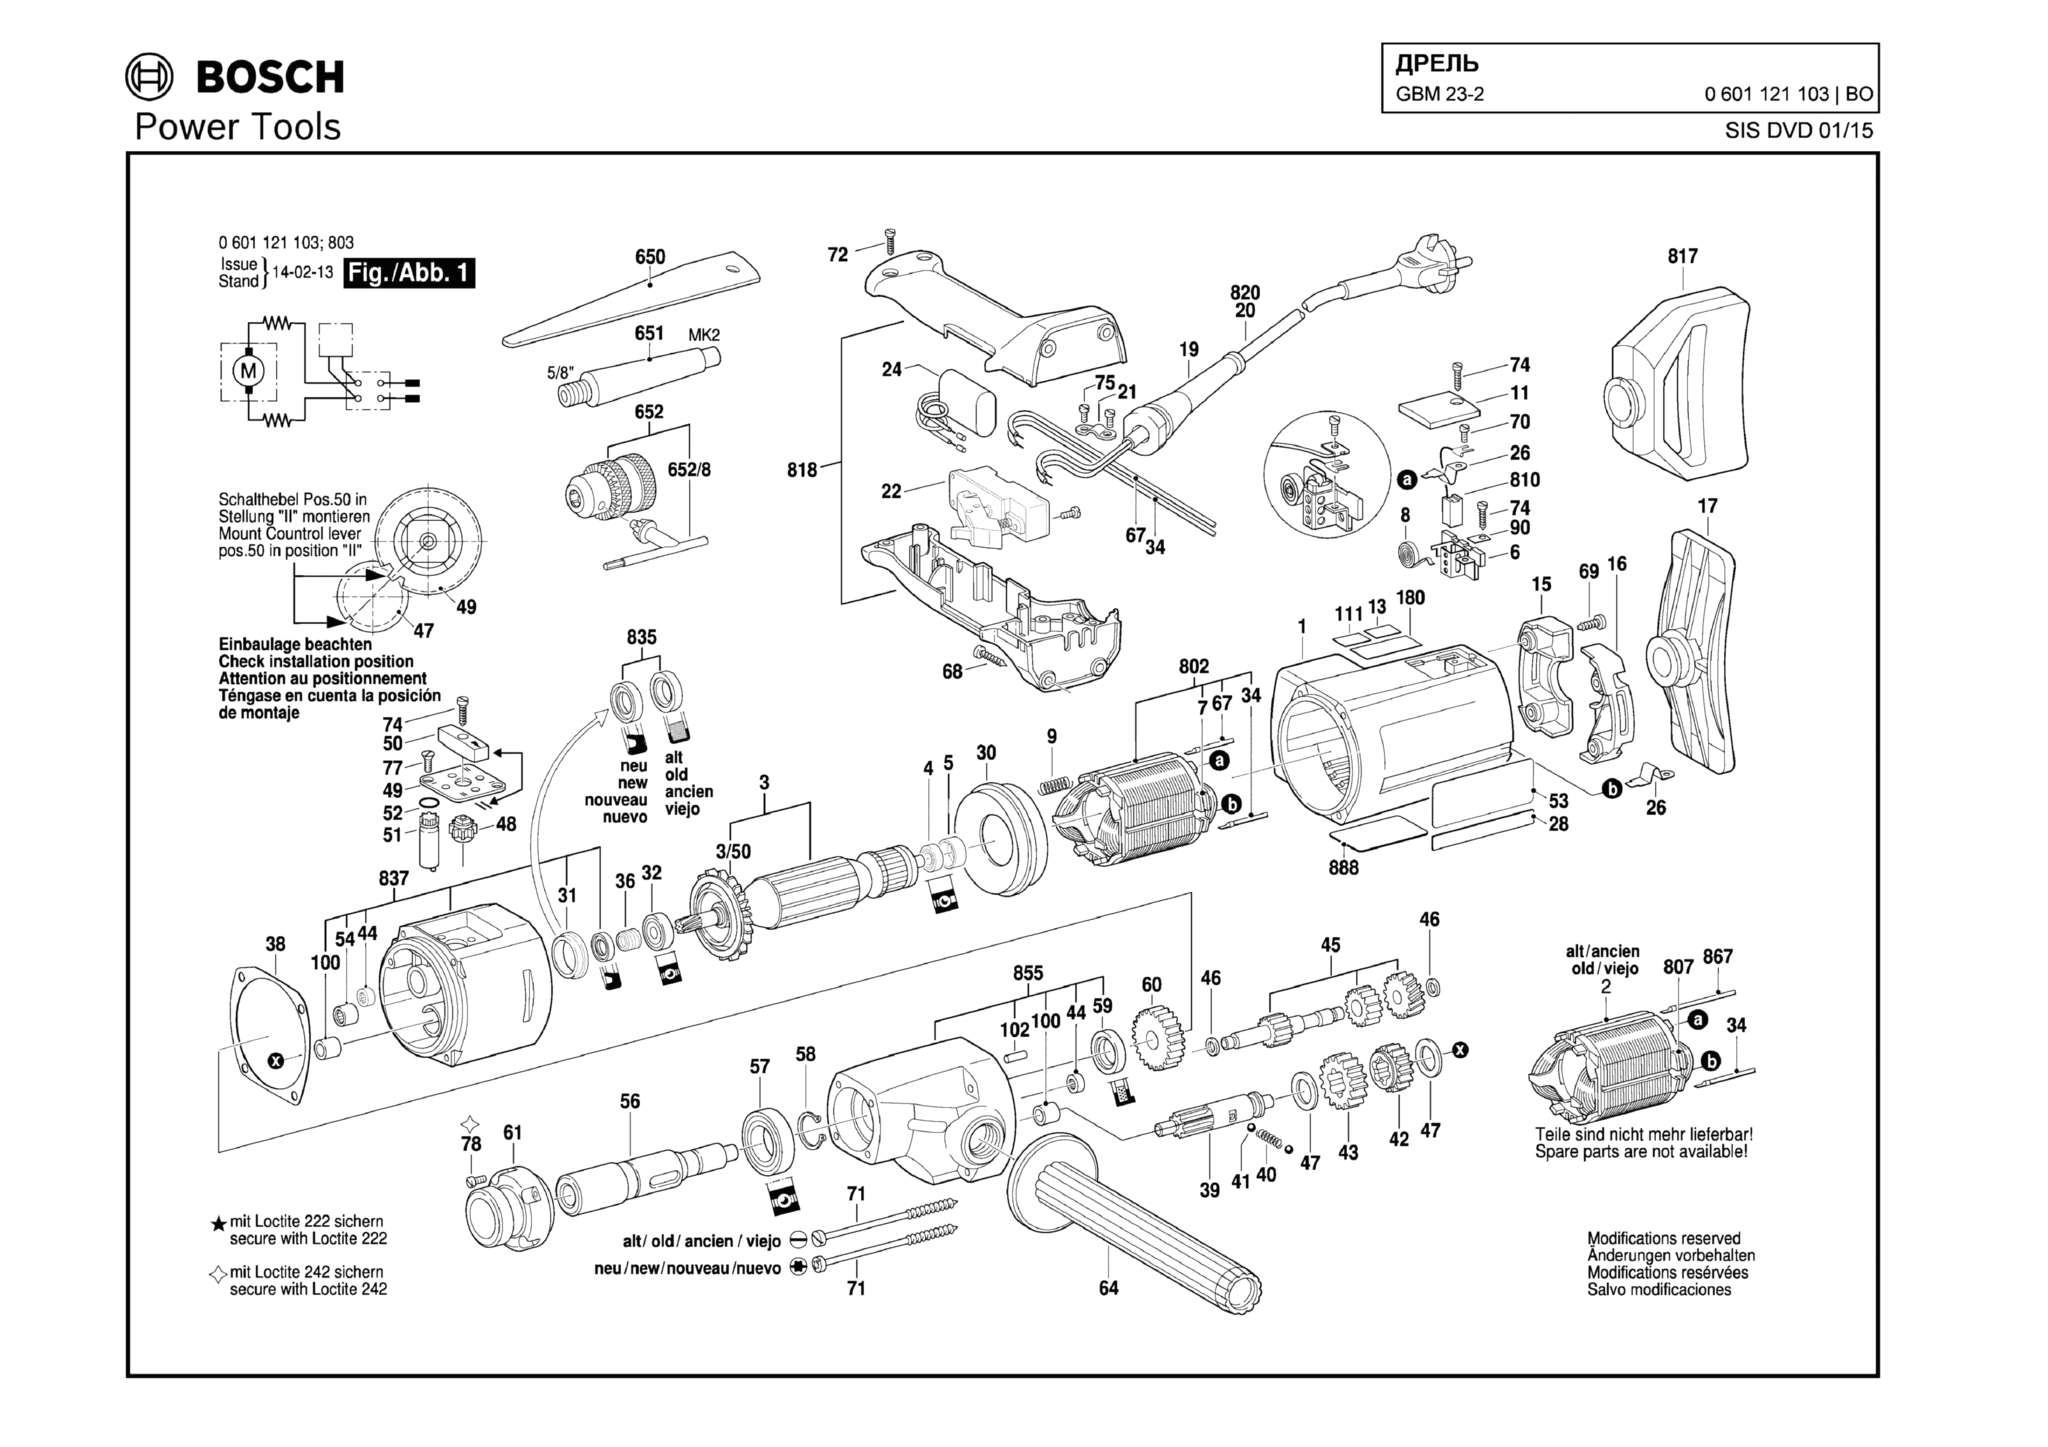 Запчасти, схема и деталировка Bosch GBM 23-2 (ТИП 0601121103)